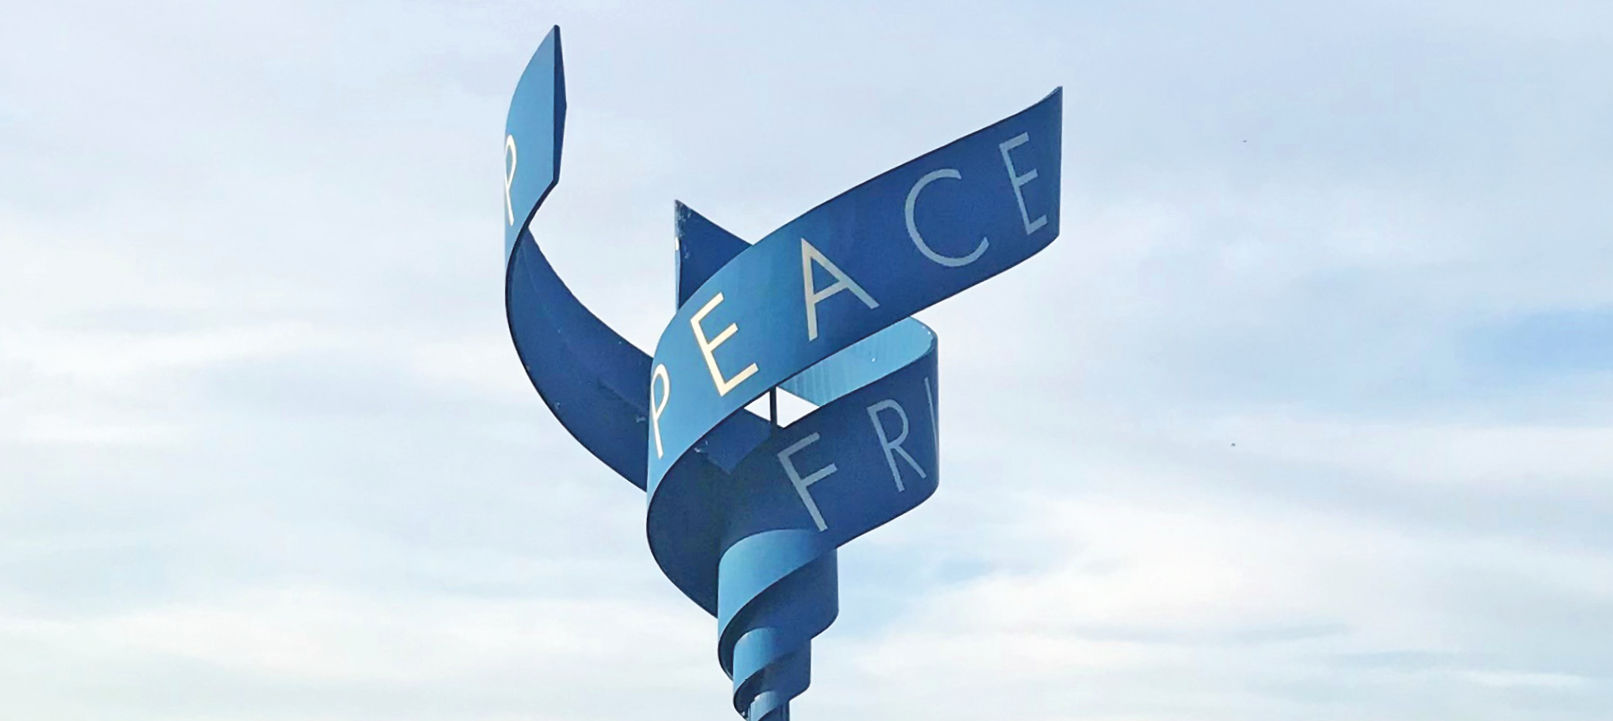 Pastorale Anregungen zu "Solidarität, Frieden und Versöhnung"